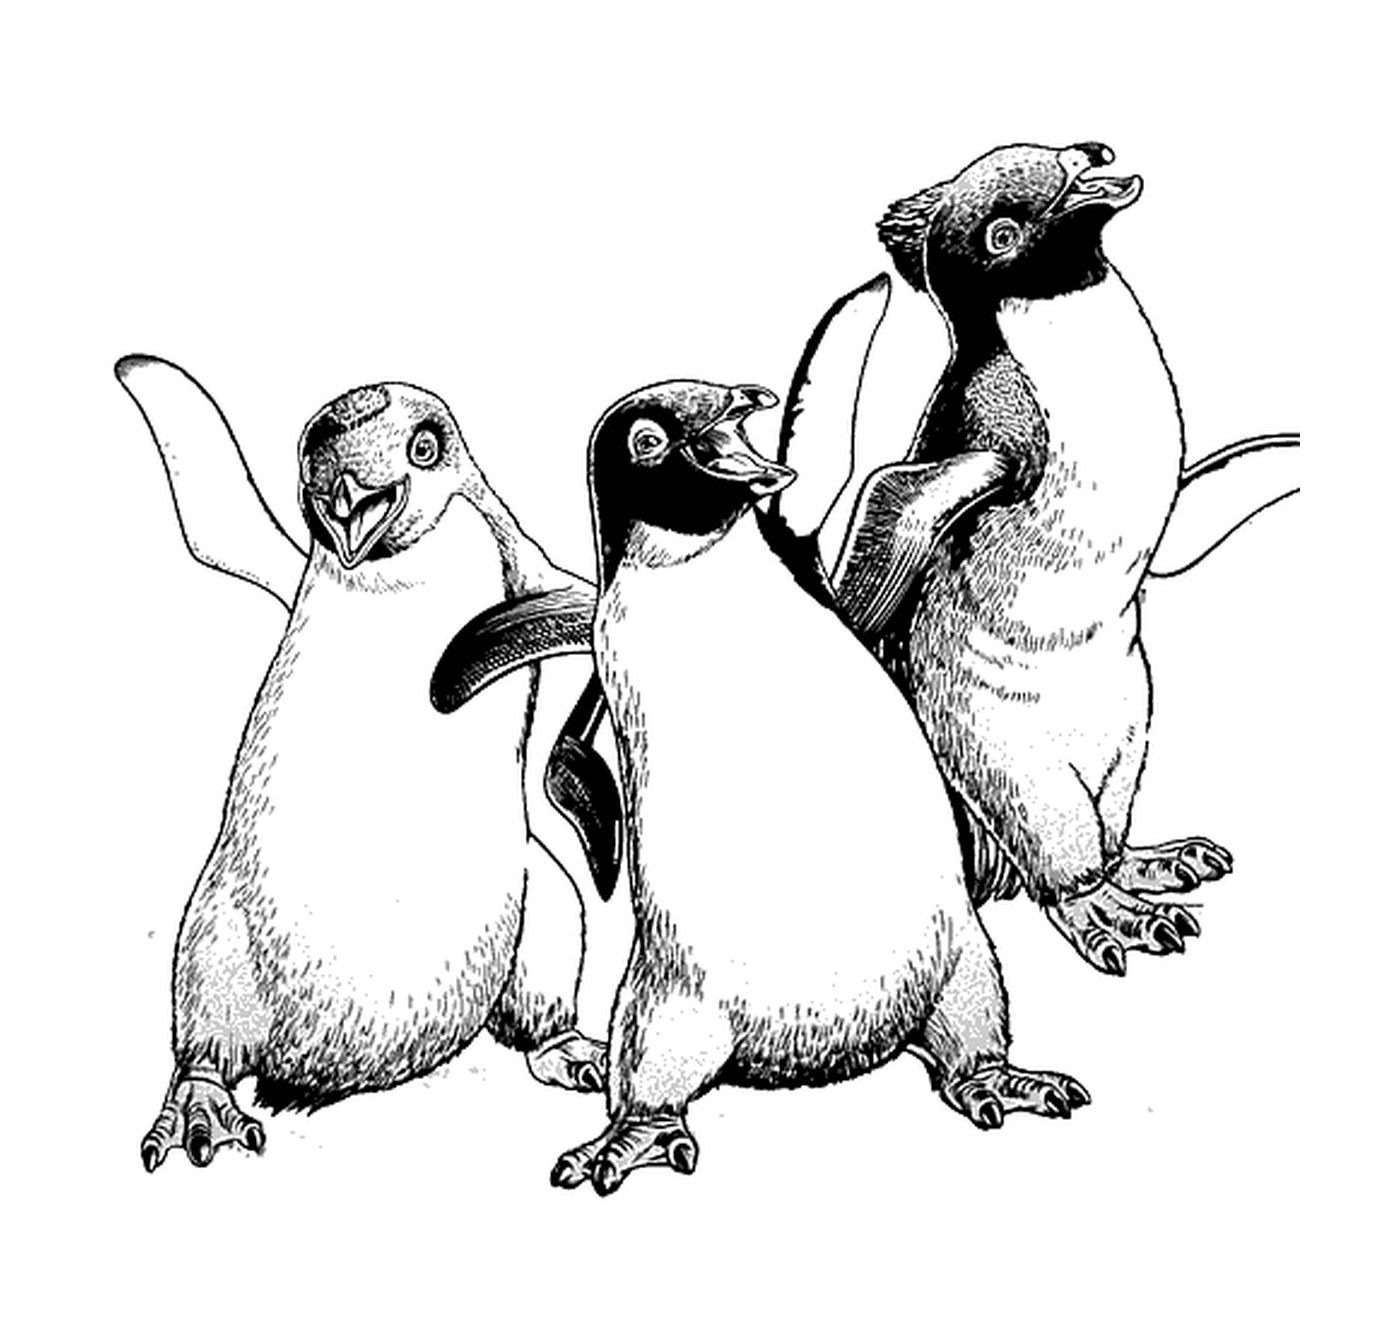   Groupe de trois pingouins côte à côte 